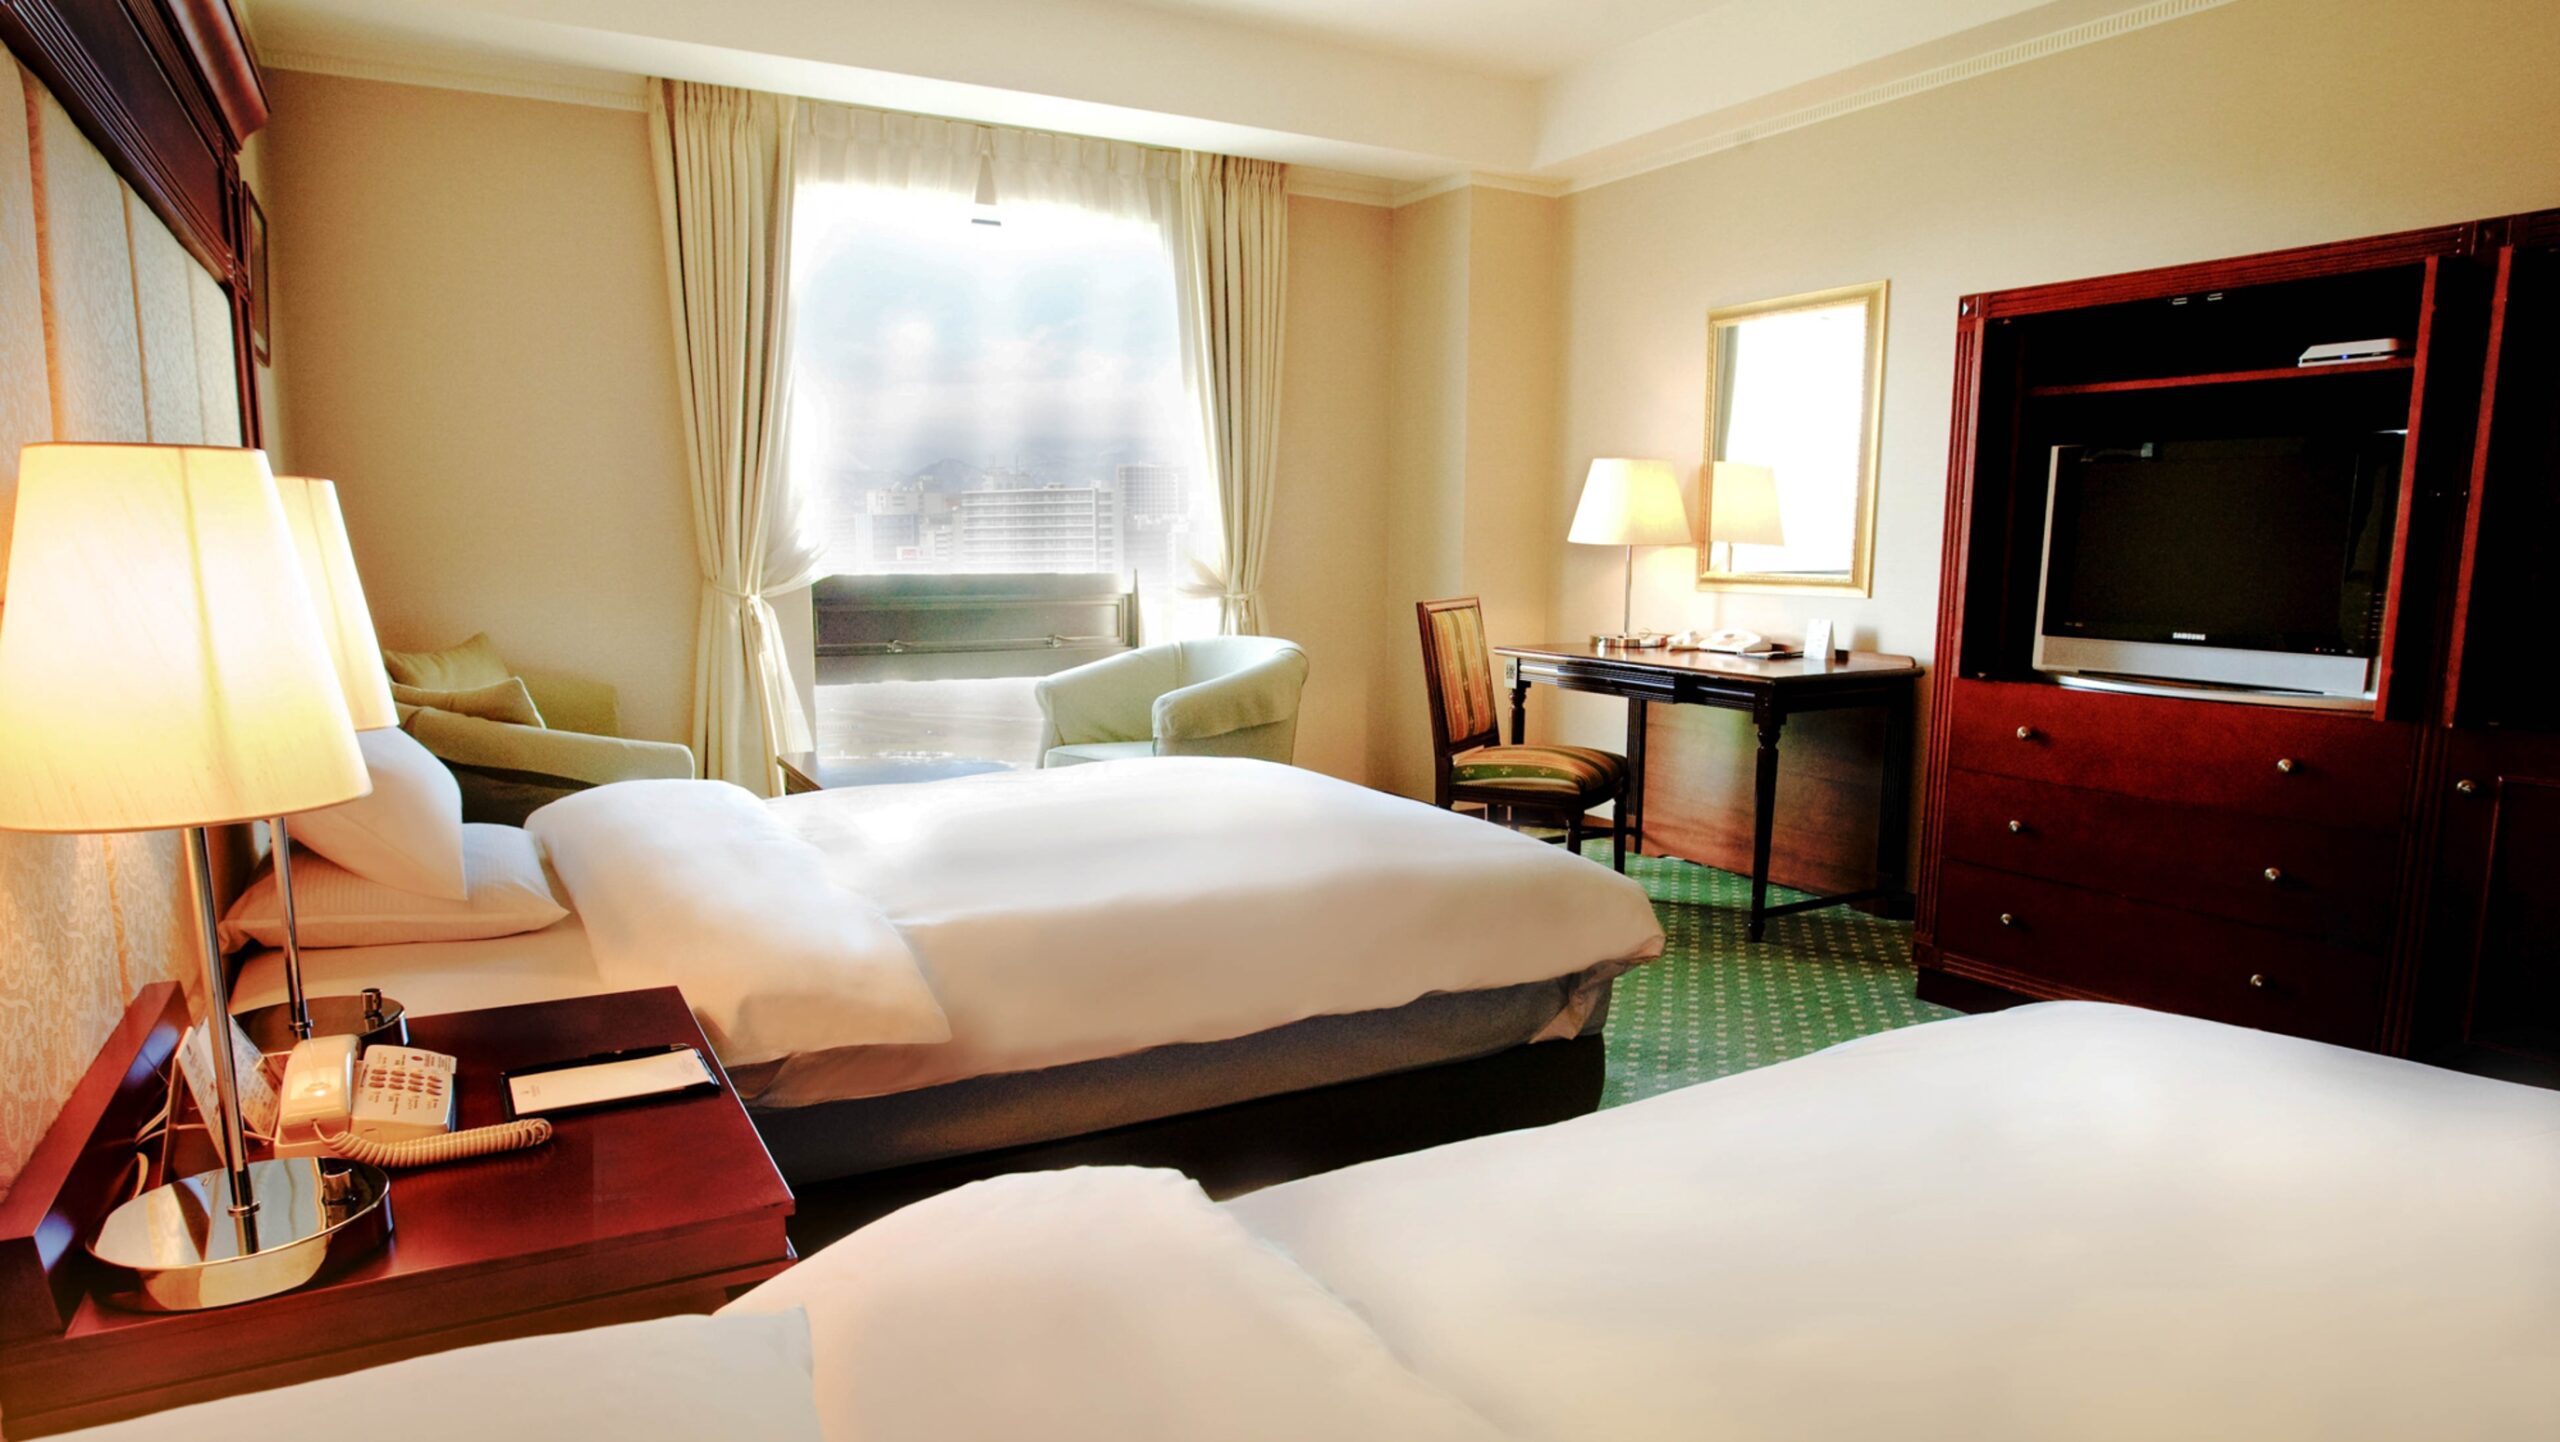 札幌のホテルで高級なおすすめのホテル20選　14位:プレミアホテル-TSUBAKI-札幌